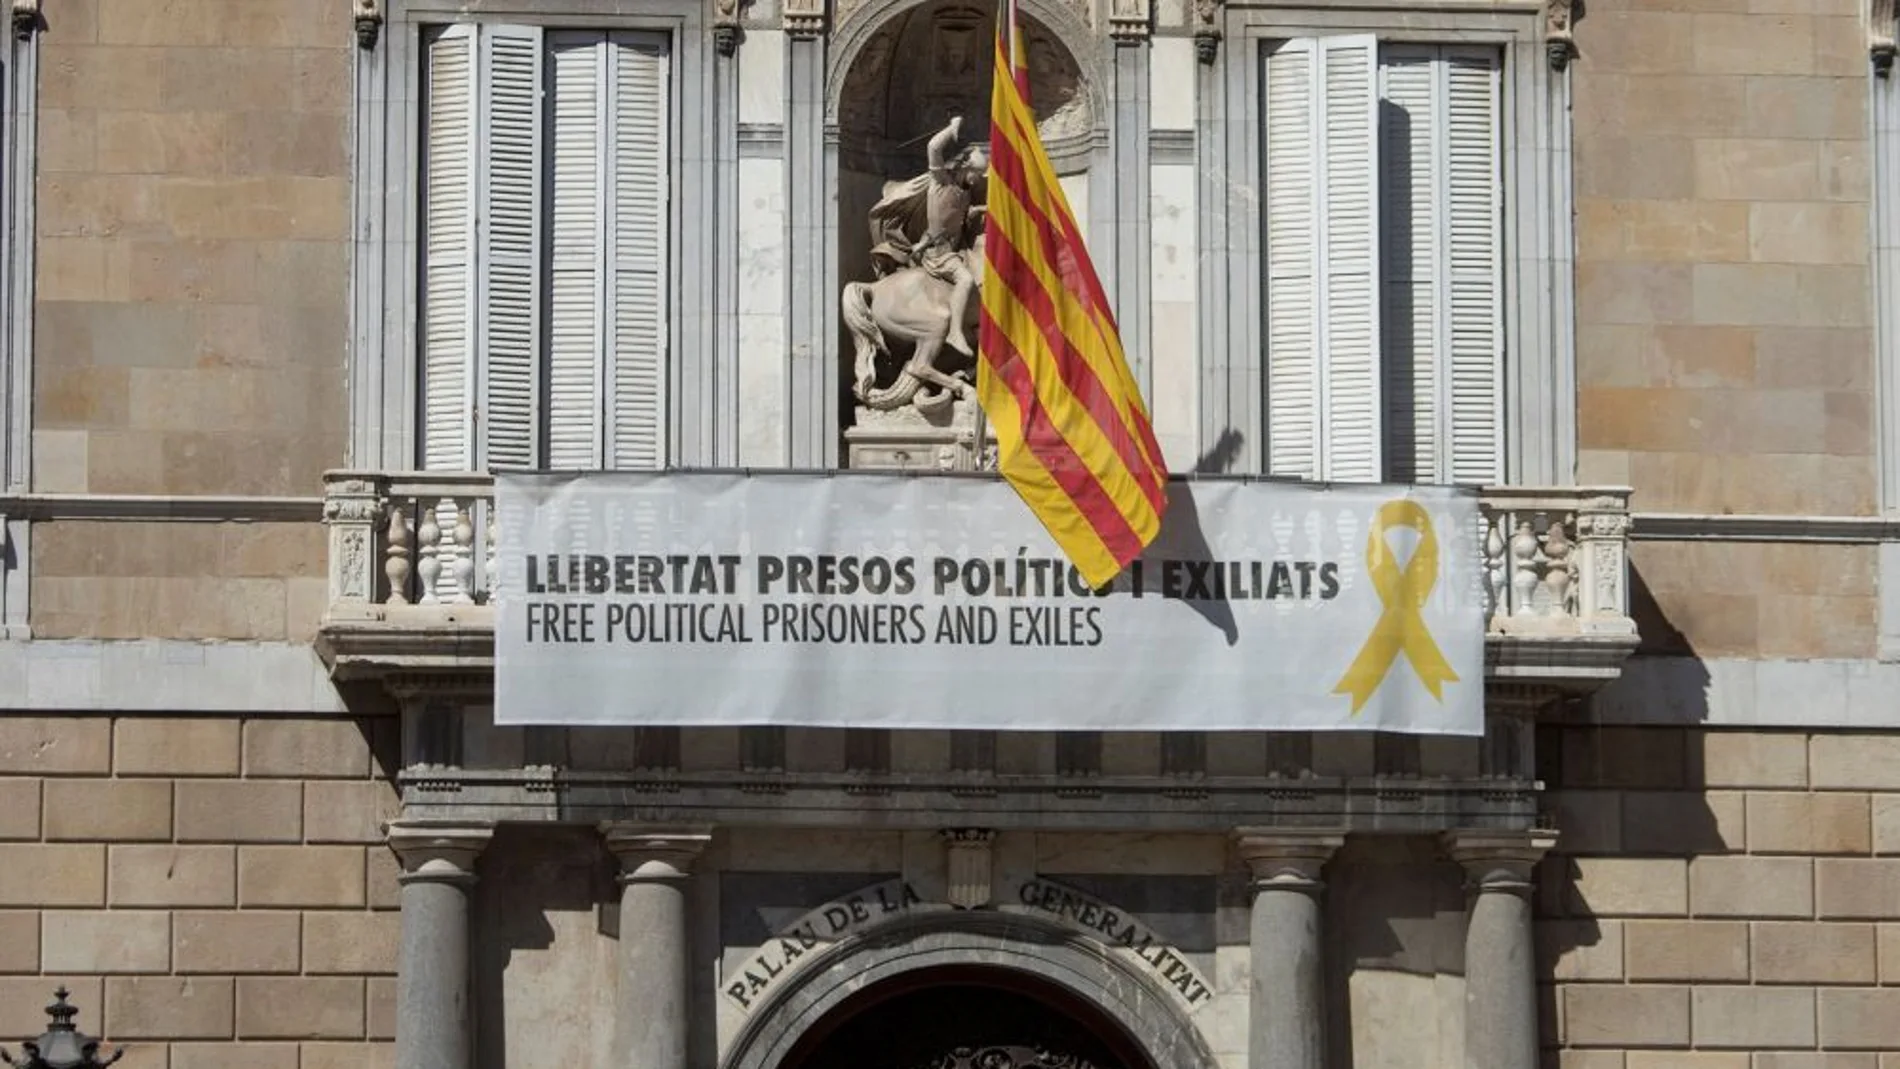 laSexta Noticias 20:00 (19-03-19) Torra mantendrá los lazos amarillos en la Generalitat: "No está de acuerdo con la Junta Electoral"